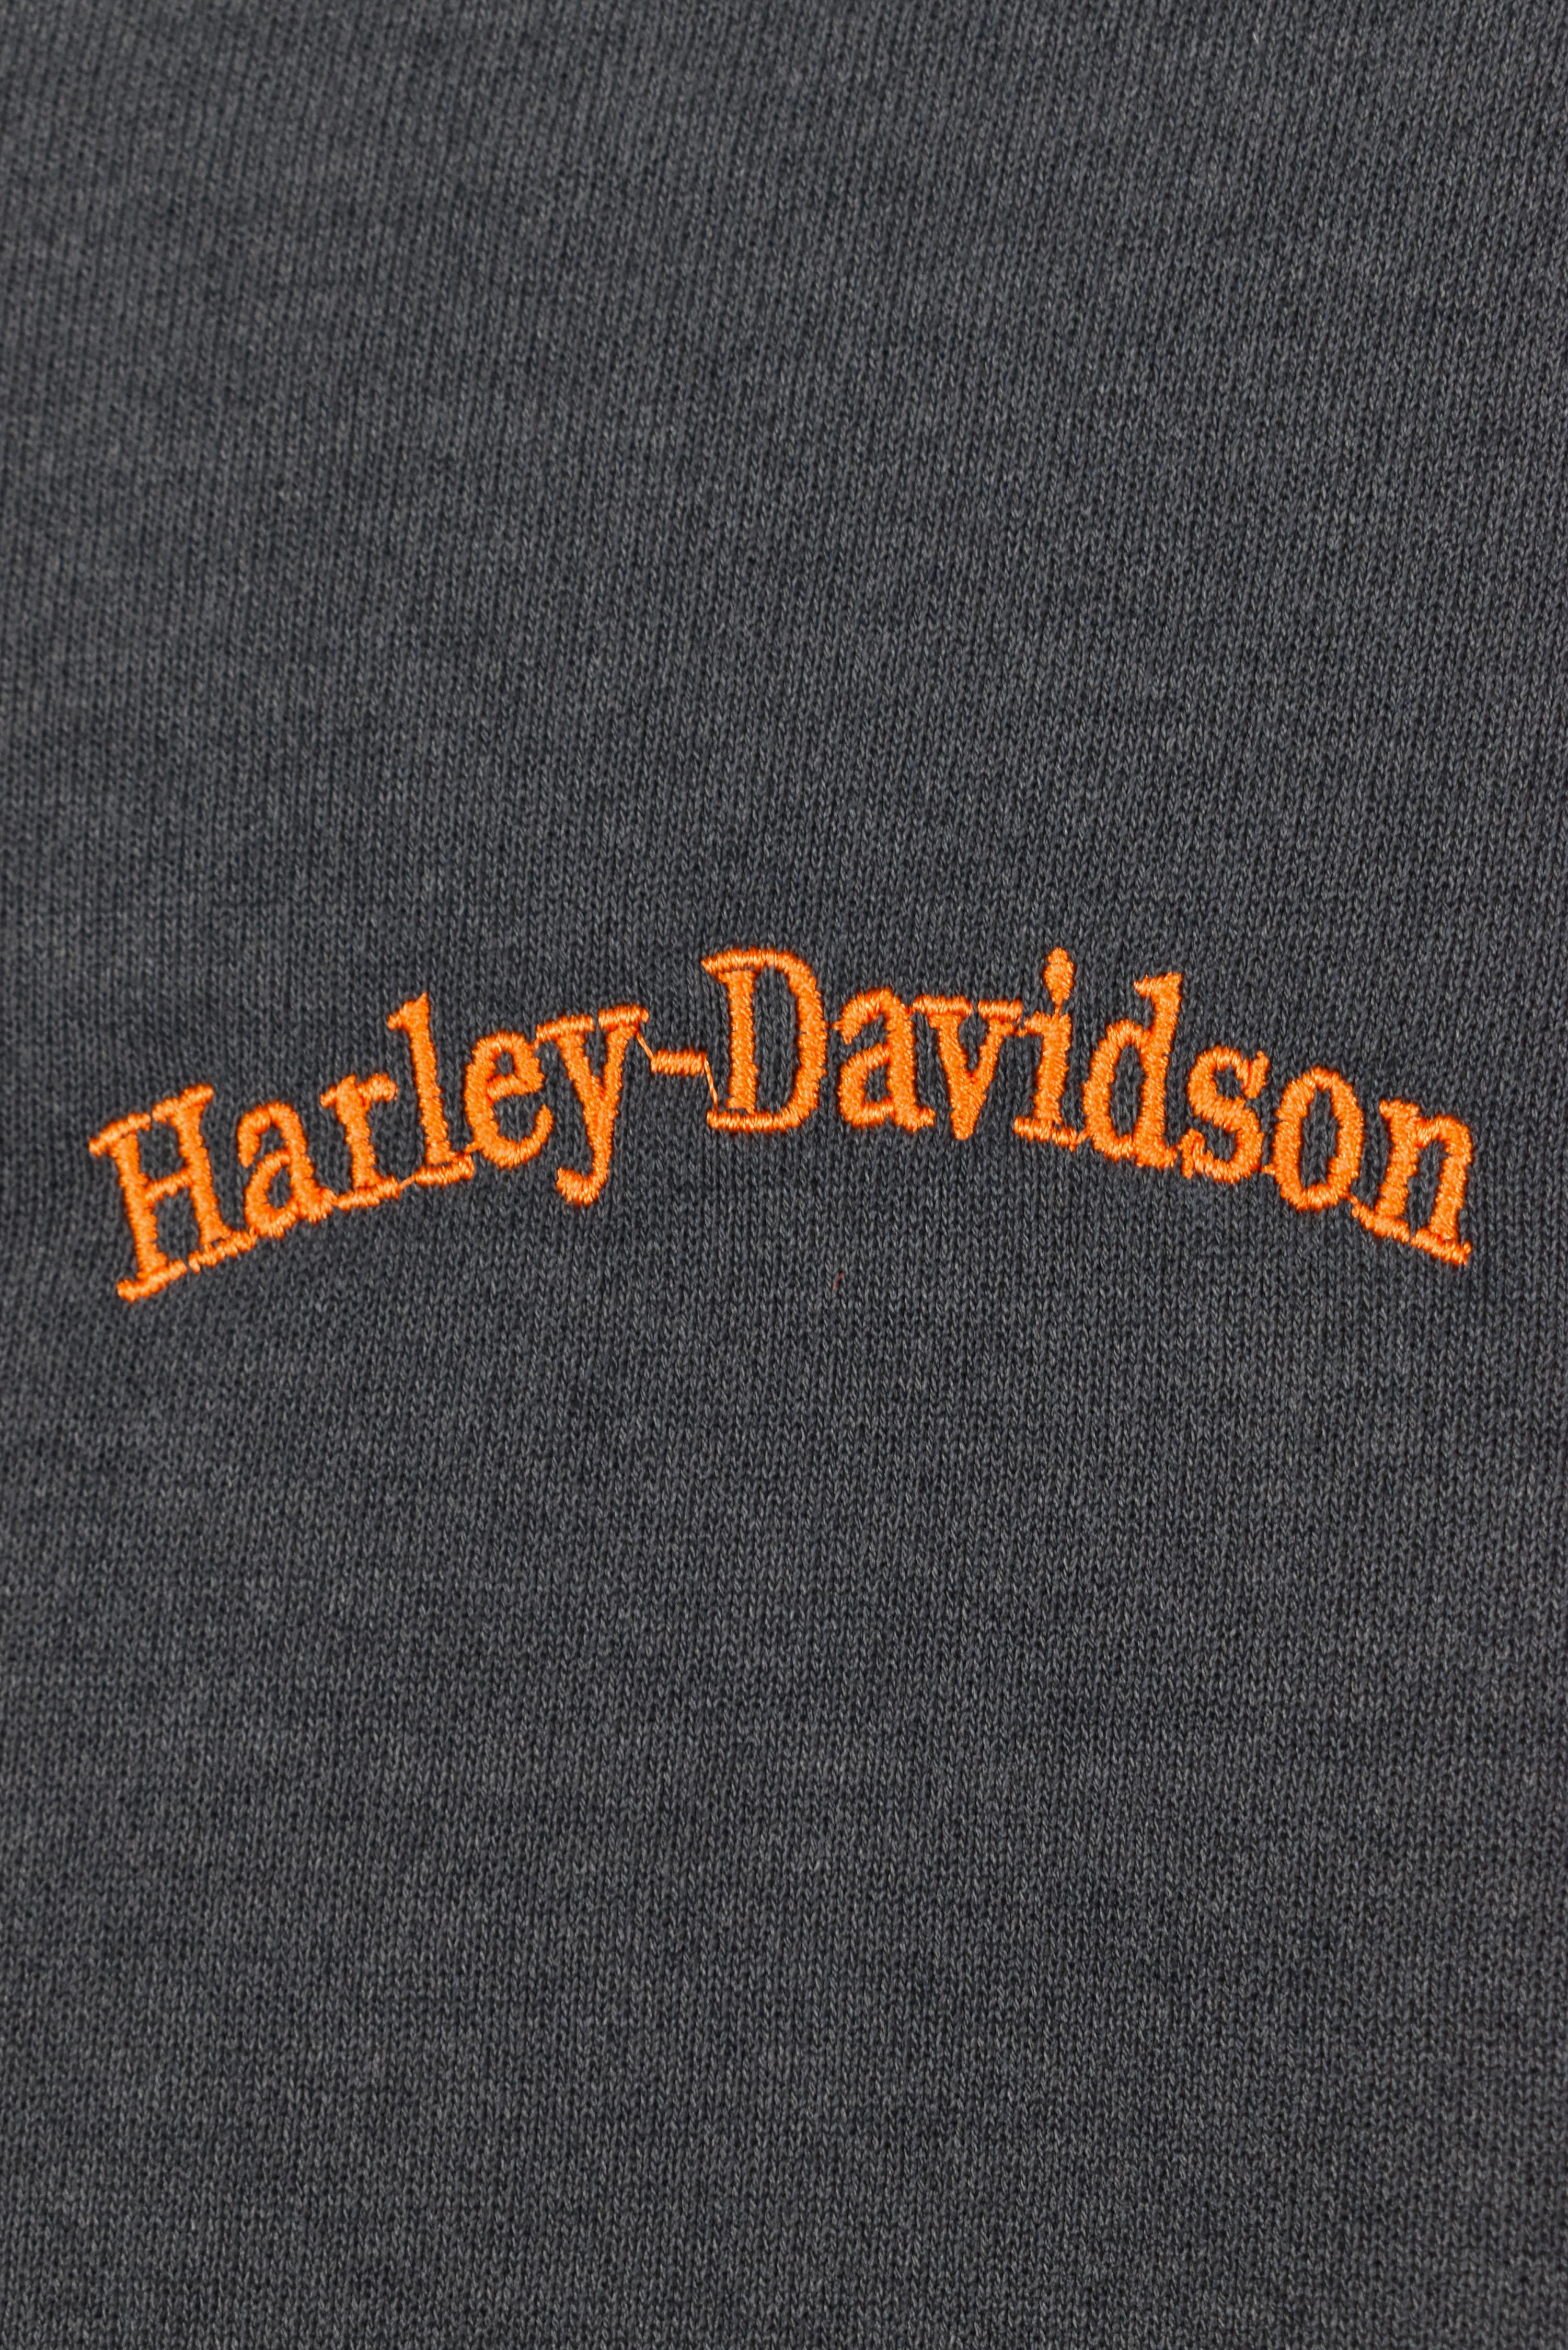 VINTAGE HARLEY DAVIDSON EMBROIDERED BLACK SWEATSHIRT | LARGE HARLEY DAVIDSON